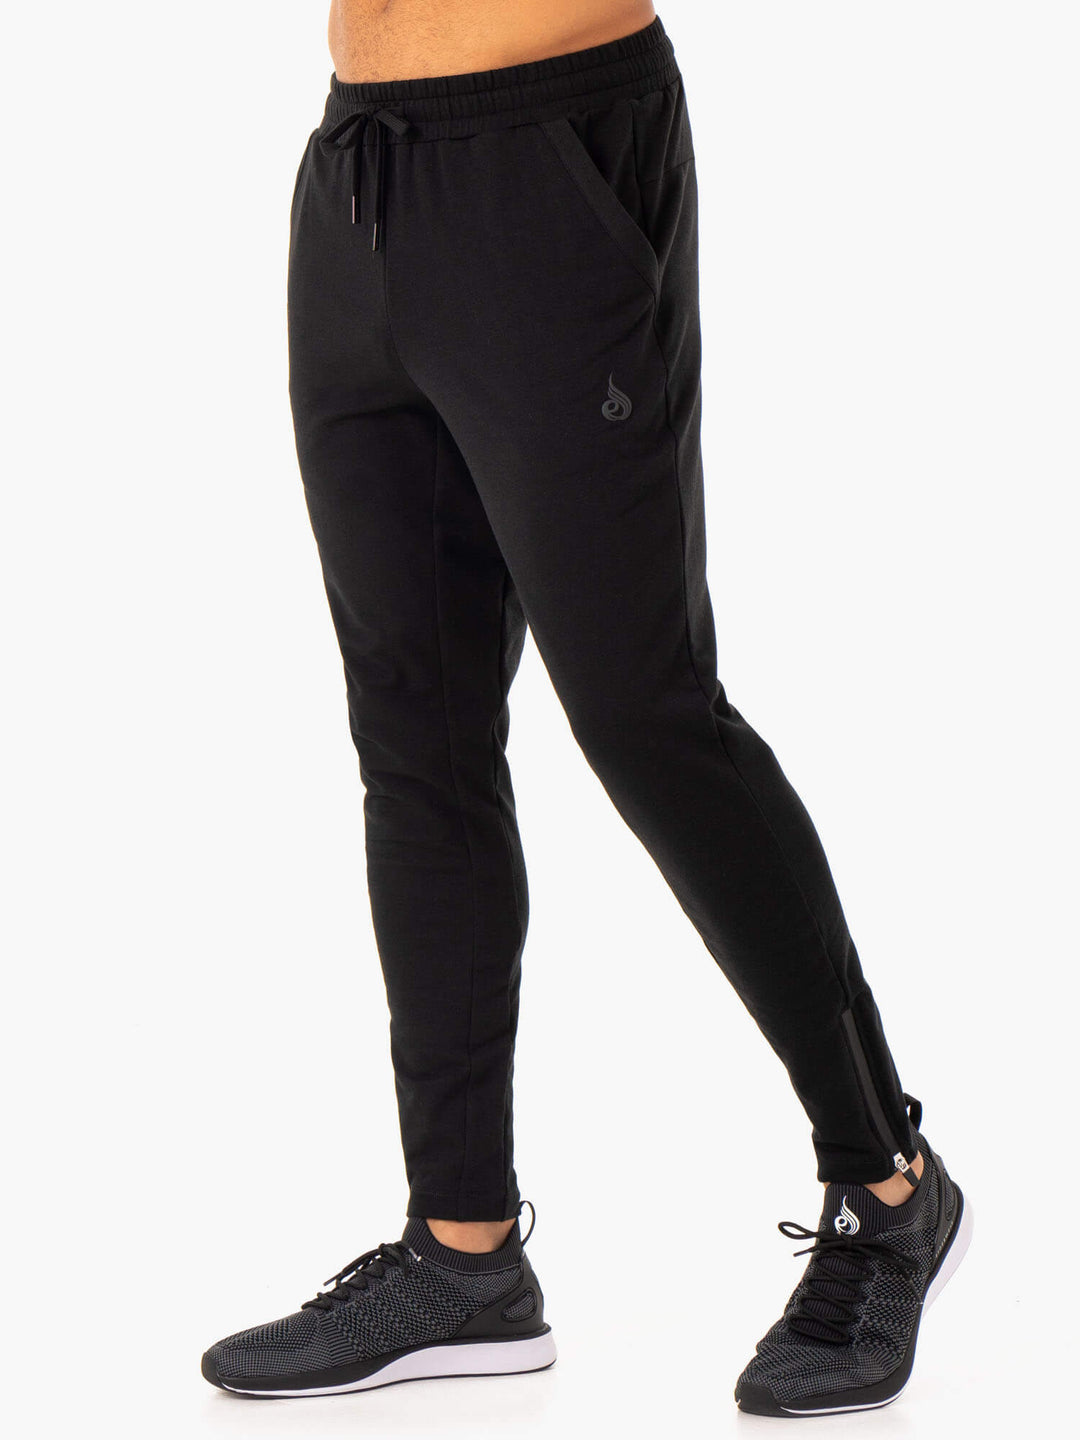 https://www.ryderwear.com/cdn/shop/products/optimal-gym-track-pant-black-clothing-ryderwear-862081_1080x.jpg?v=1643338442